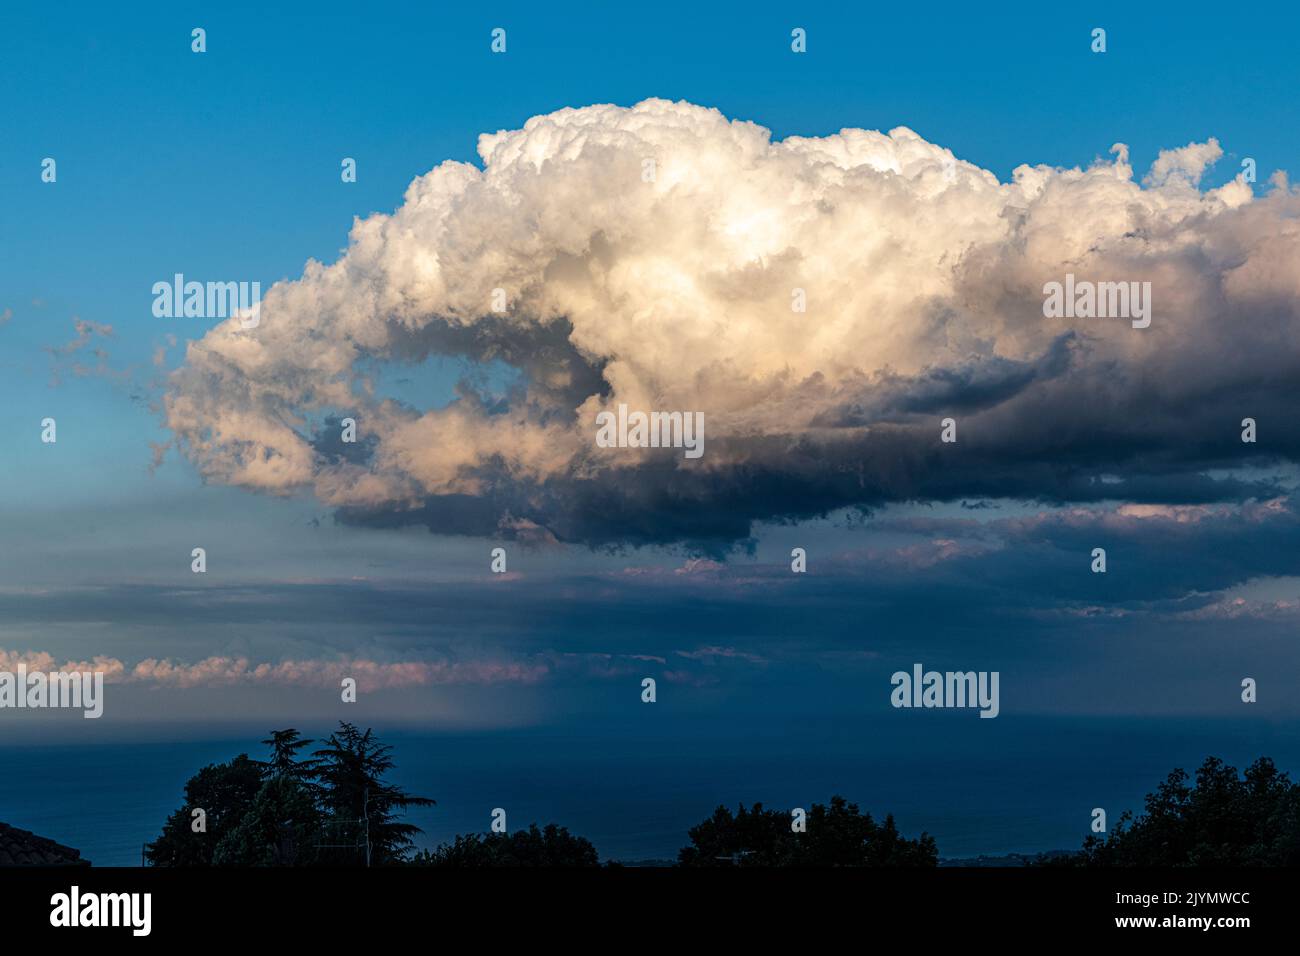 Eine seltsame Wolkenformation in Form einer riesigen Greifhand, gesehen vom sizilianischen Dorf Milo in der Nähe von Catania Stockfoto